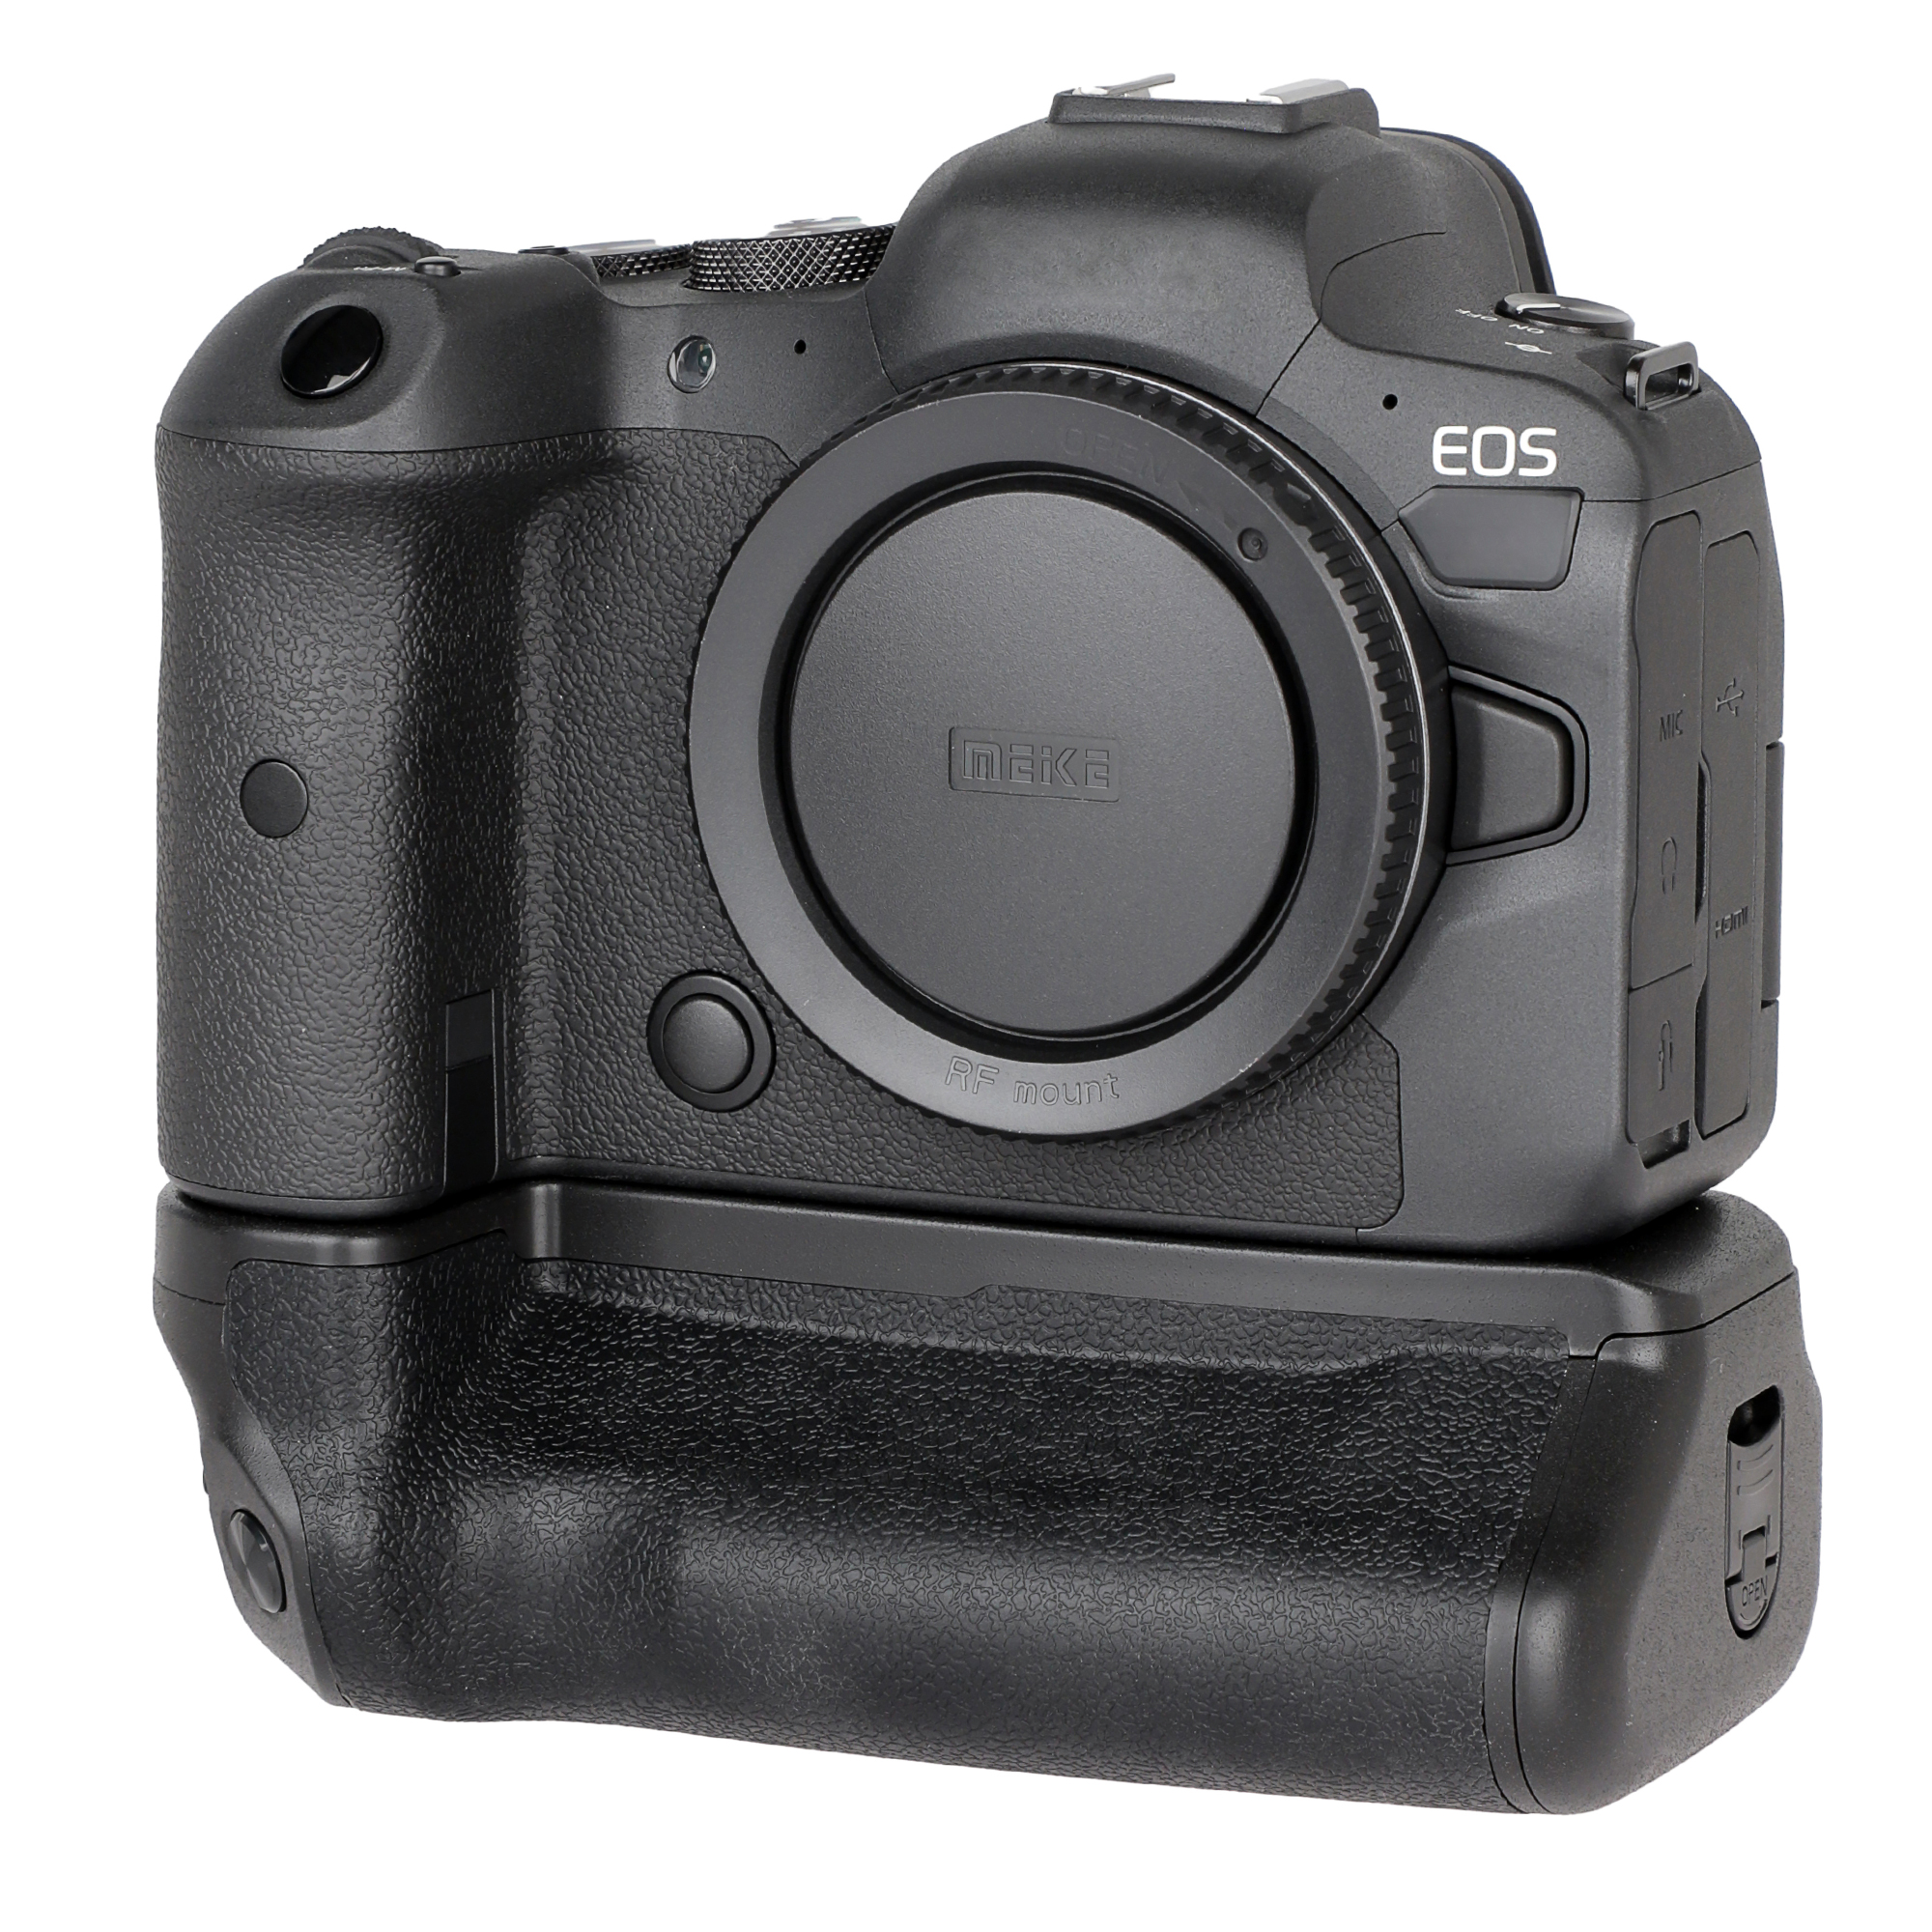 ayex Batteriegriff Set für Canon EOS R5 R6 wie BG-R10 + 2x LP-E6N Akkus kompakter Handgriff